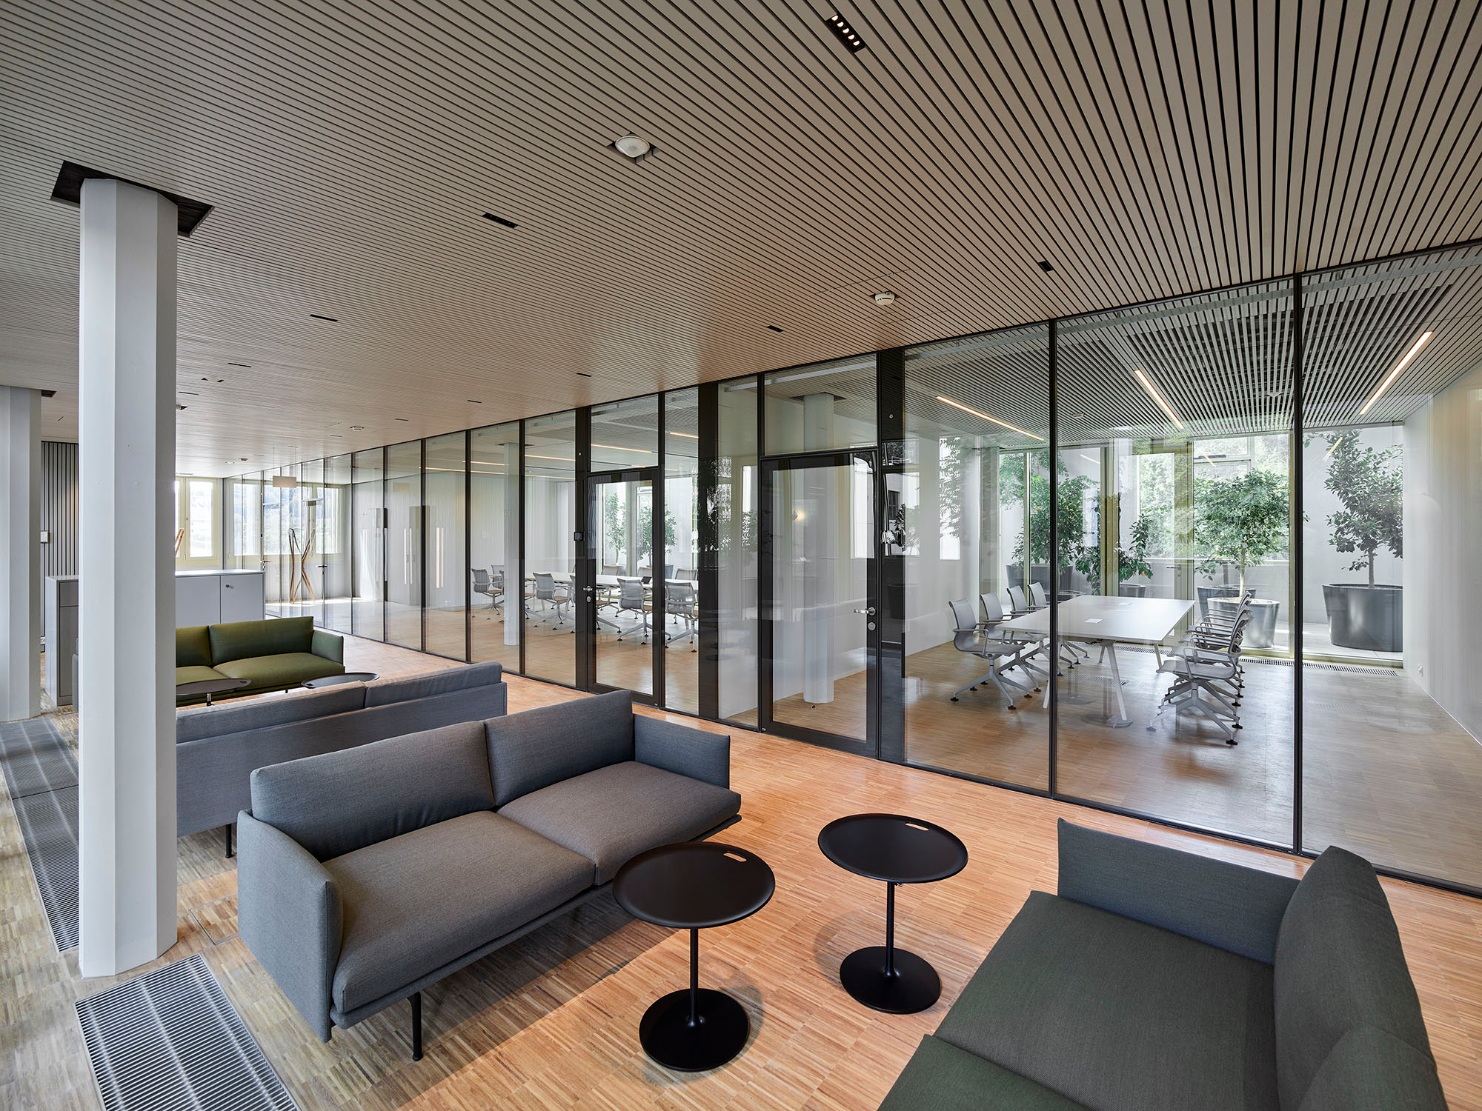 Le lounge avec des sièges d’un gris discret devant la grande façade vitrée permet des échanges informels